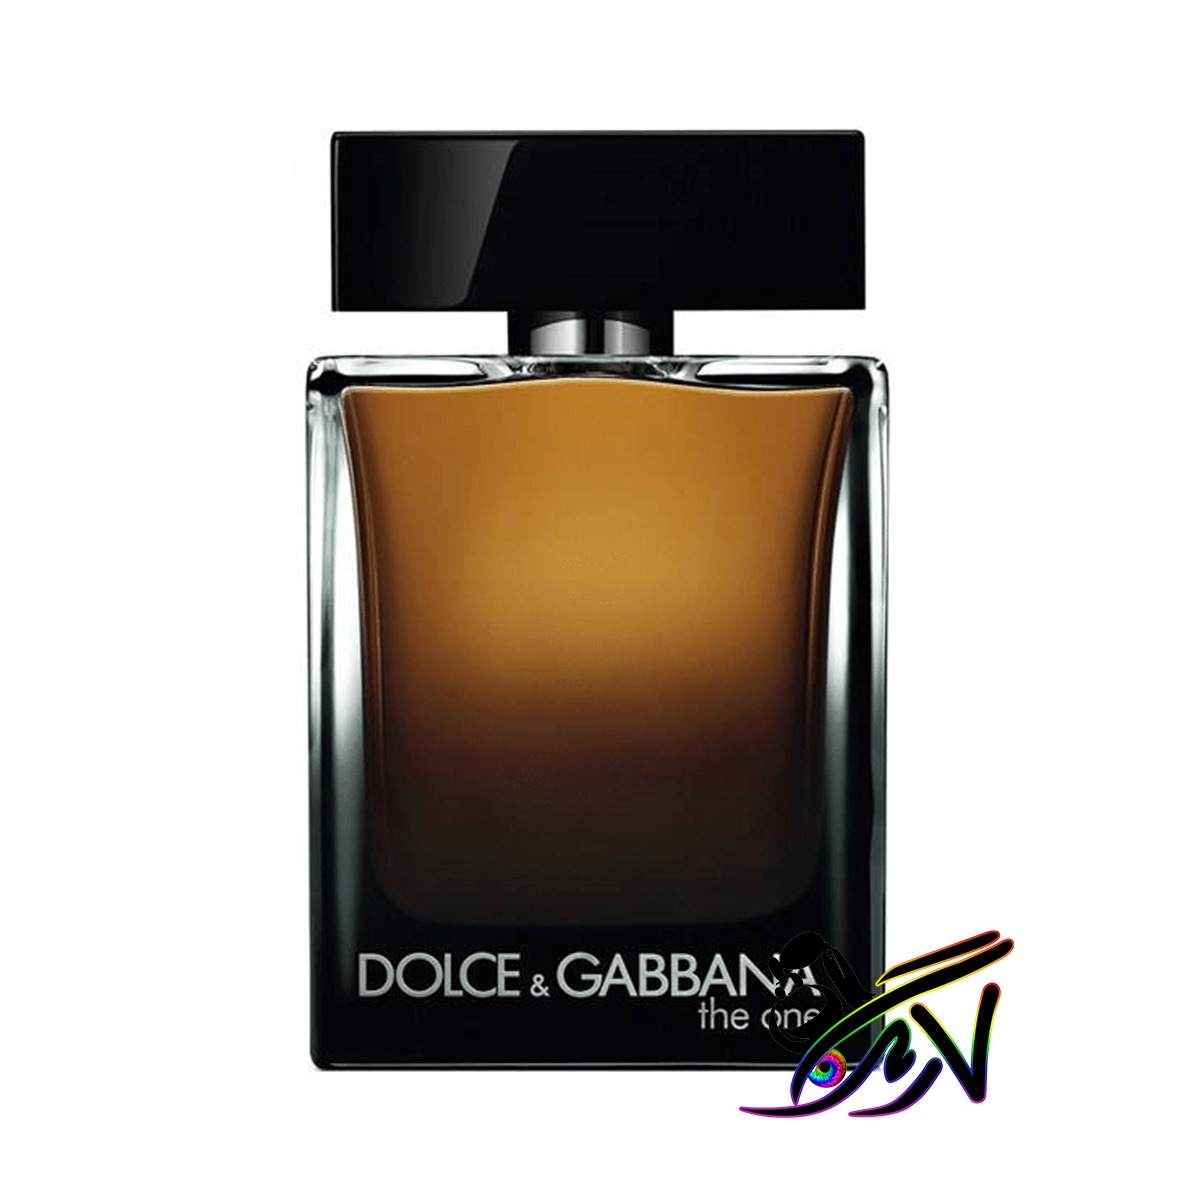 خرید اینترنتی ادکلن دی اند جی دلچه گابانا دوان مردانه Dolce Gabbana The One for men